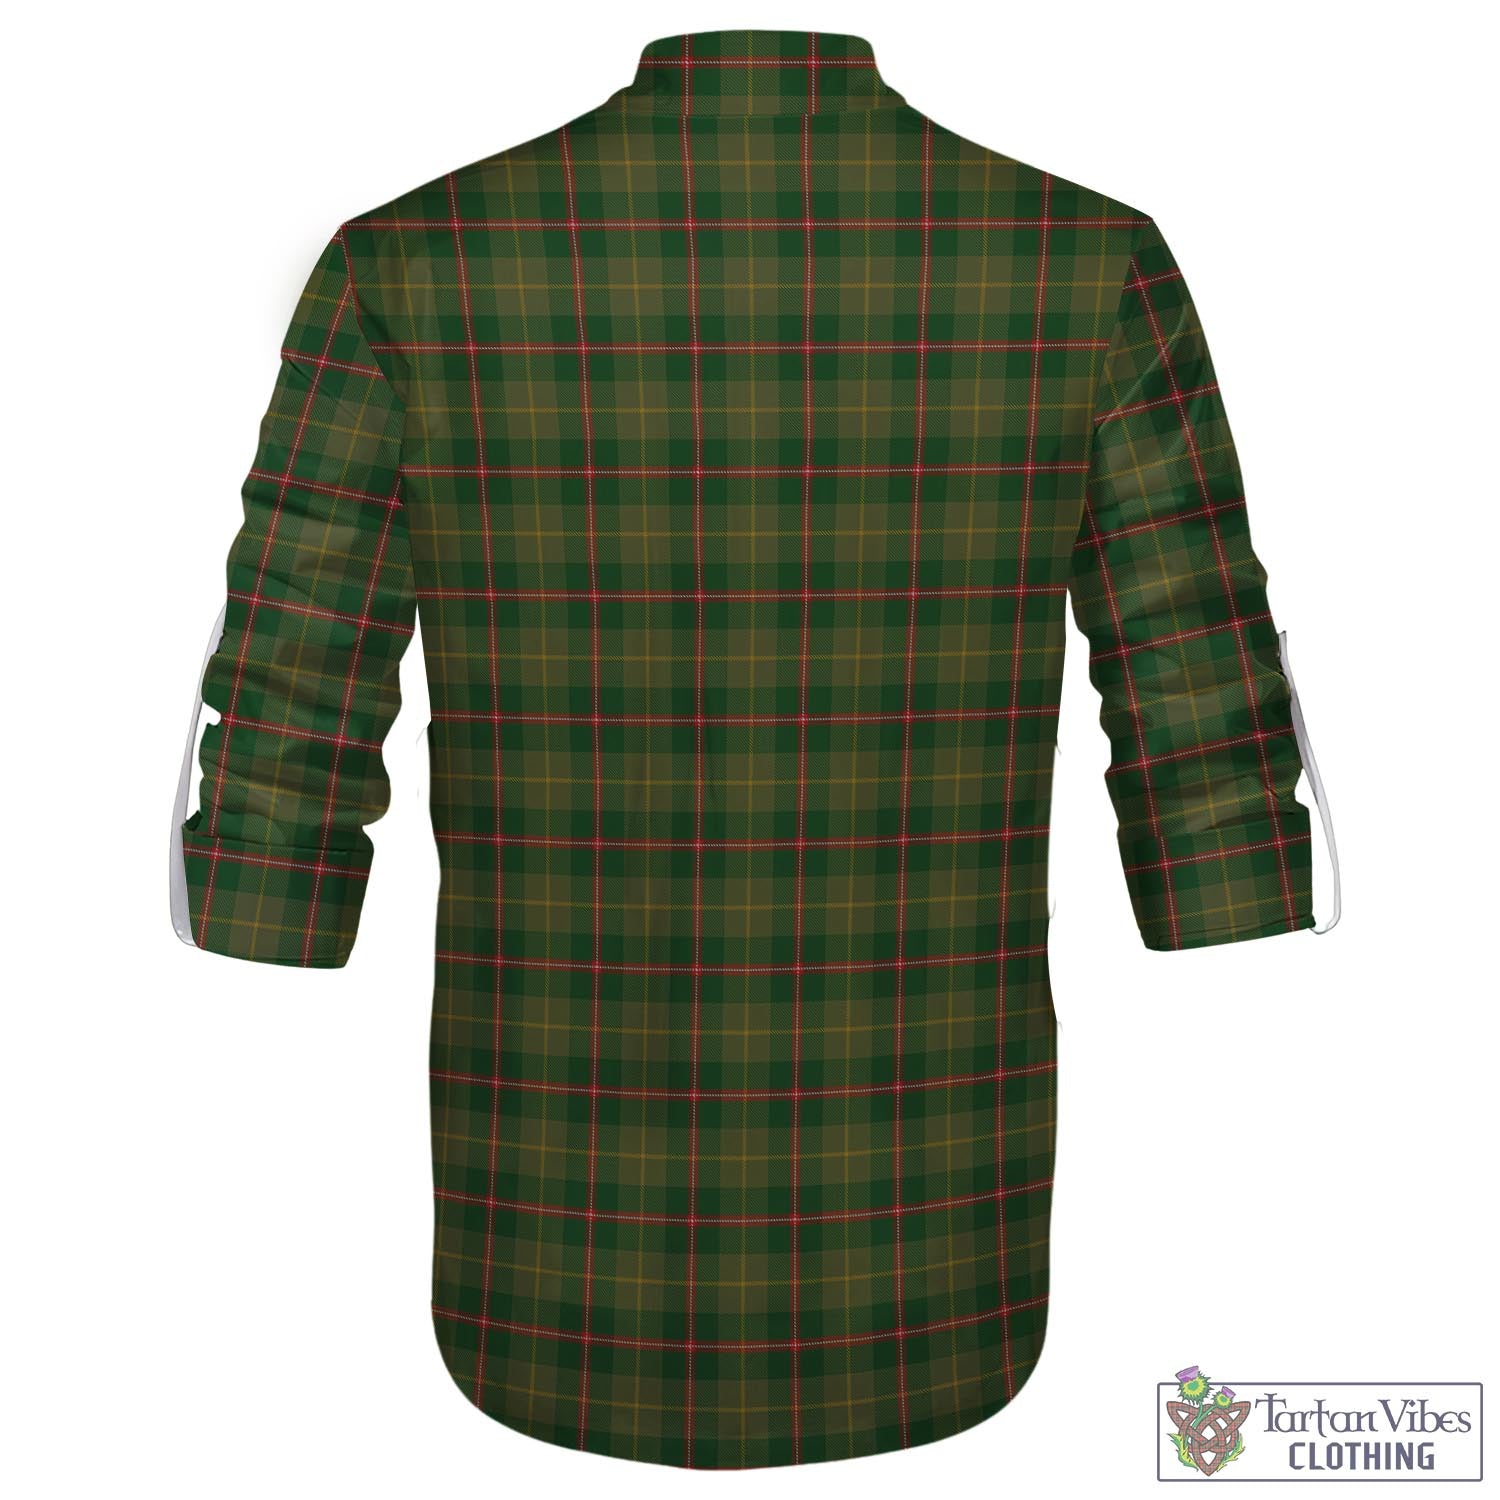 Tartan Vibes Clothing Symington Tartan Men's Scottish Traditional Jacobite Ghillie Kilt Shirt